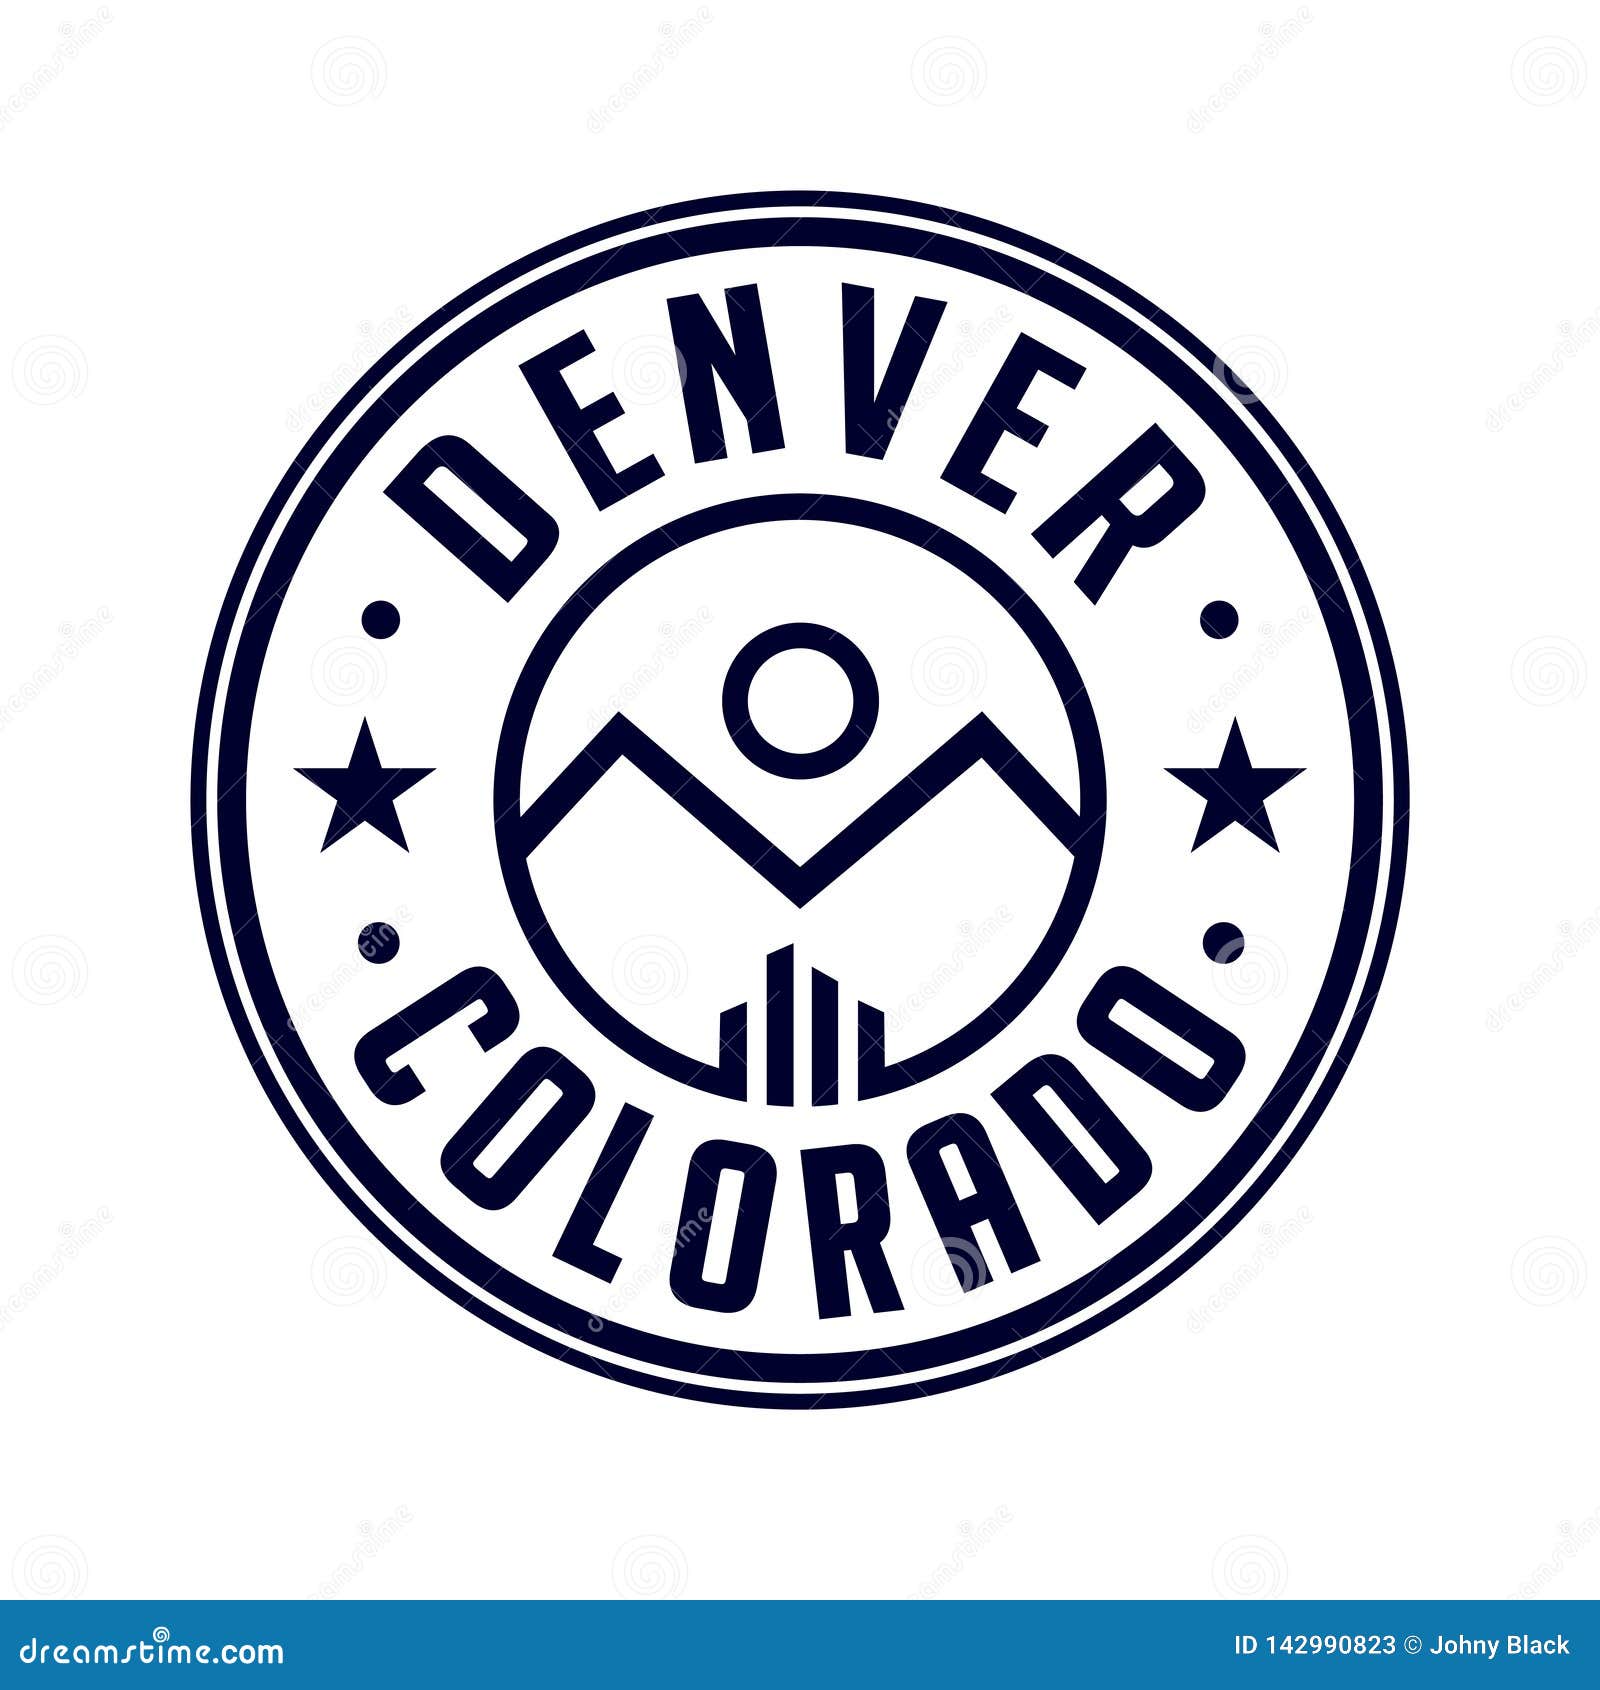 Denver Colorado Logo. Vector and Illustration. Stock Vector ...